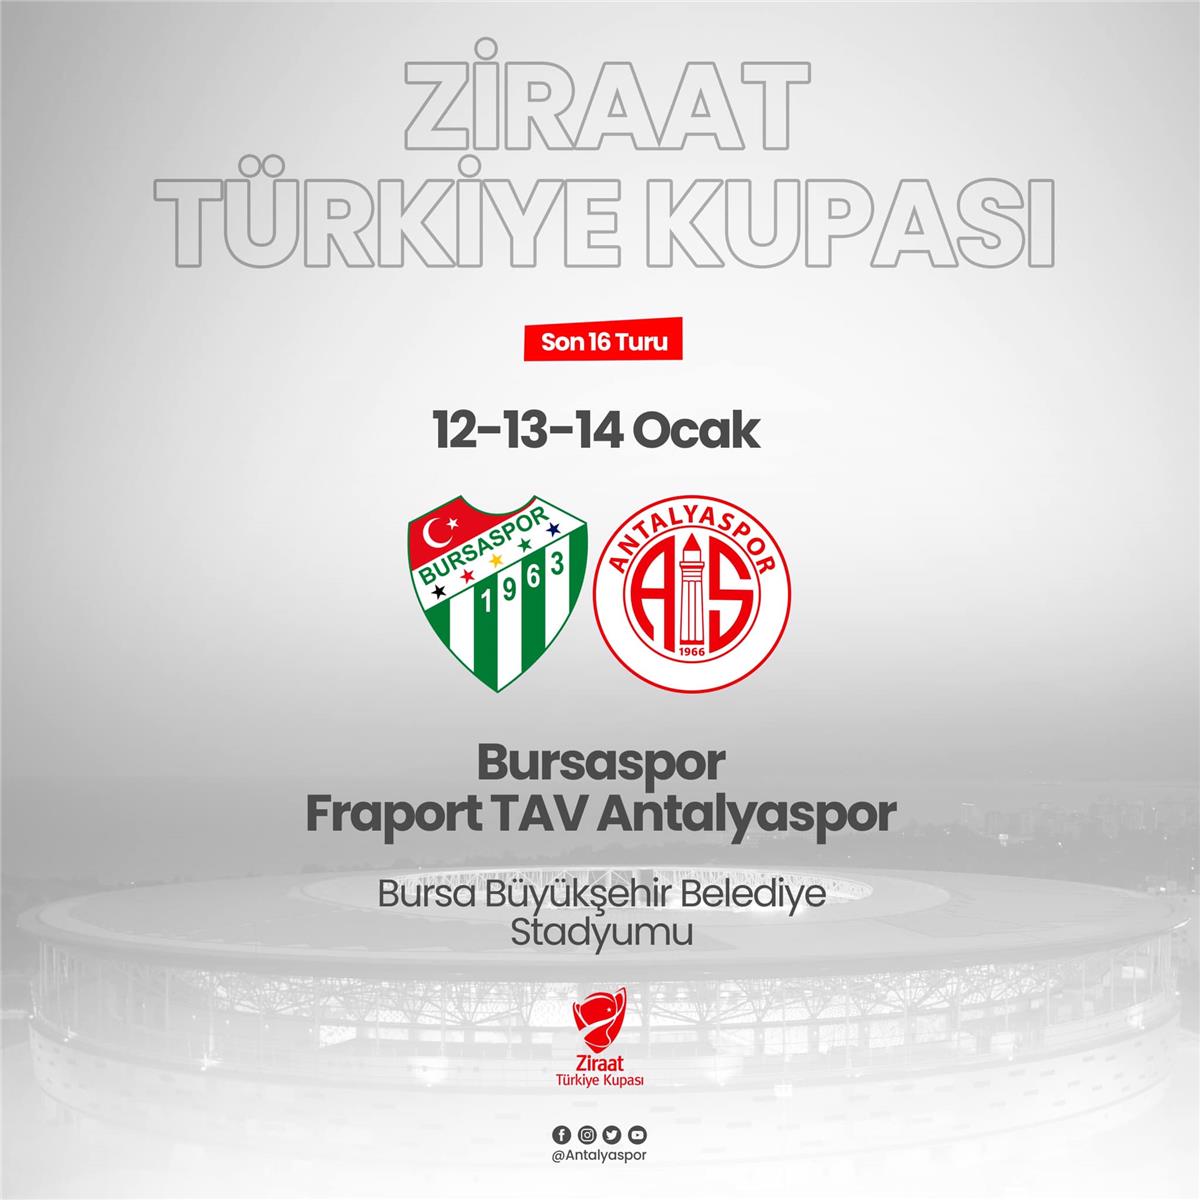 Ziraat Türkiye Kupası Son 16 Turu'nda Rakibimiz Bursaspor